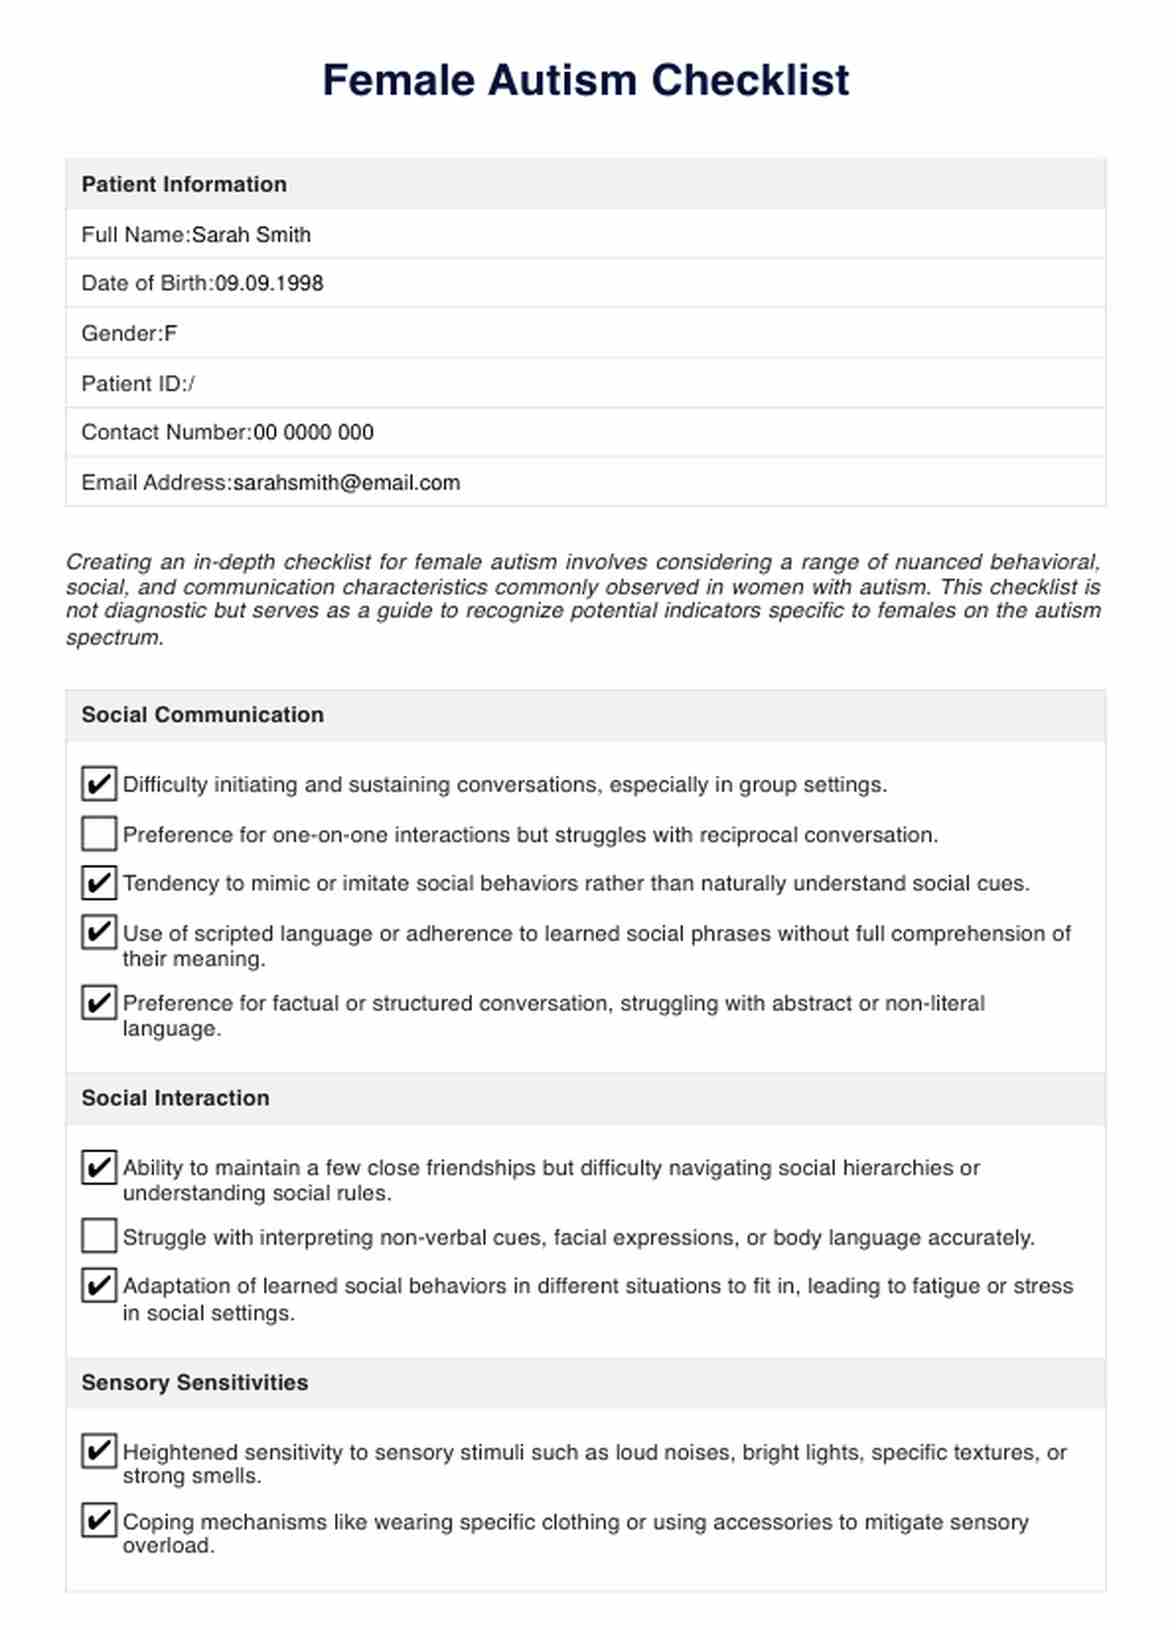 Female Autism Checklist PDF Example